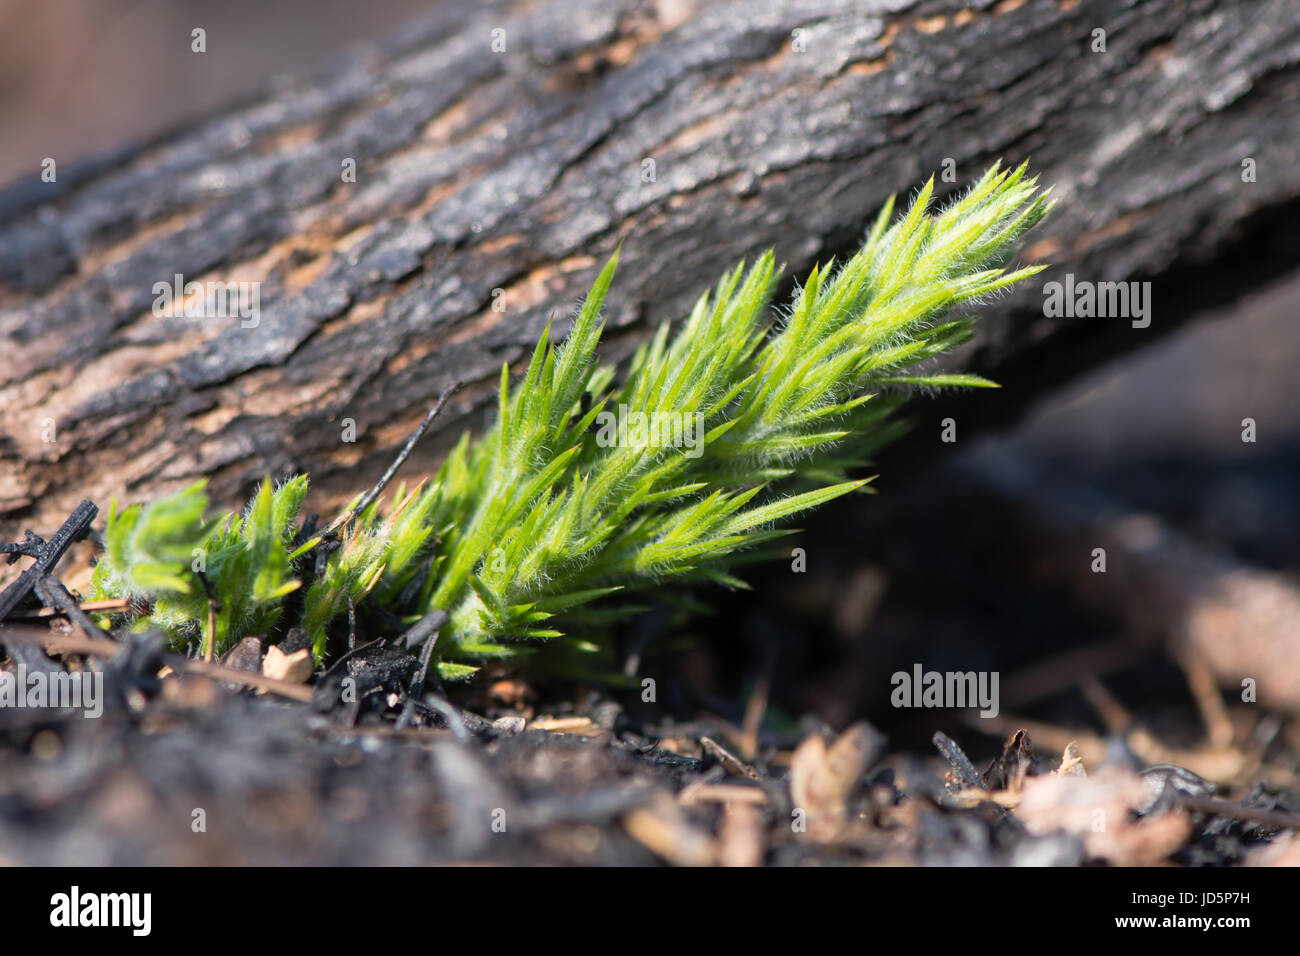 Stechginster (Ulex Europaeus) nachwachsen schießt nach dem Brennen. Neues Wachstum auf Basis des Werks nach Bereich der Heide brannte, vegetative Folge zu verhindern Stockfoto